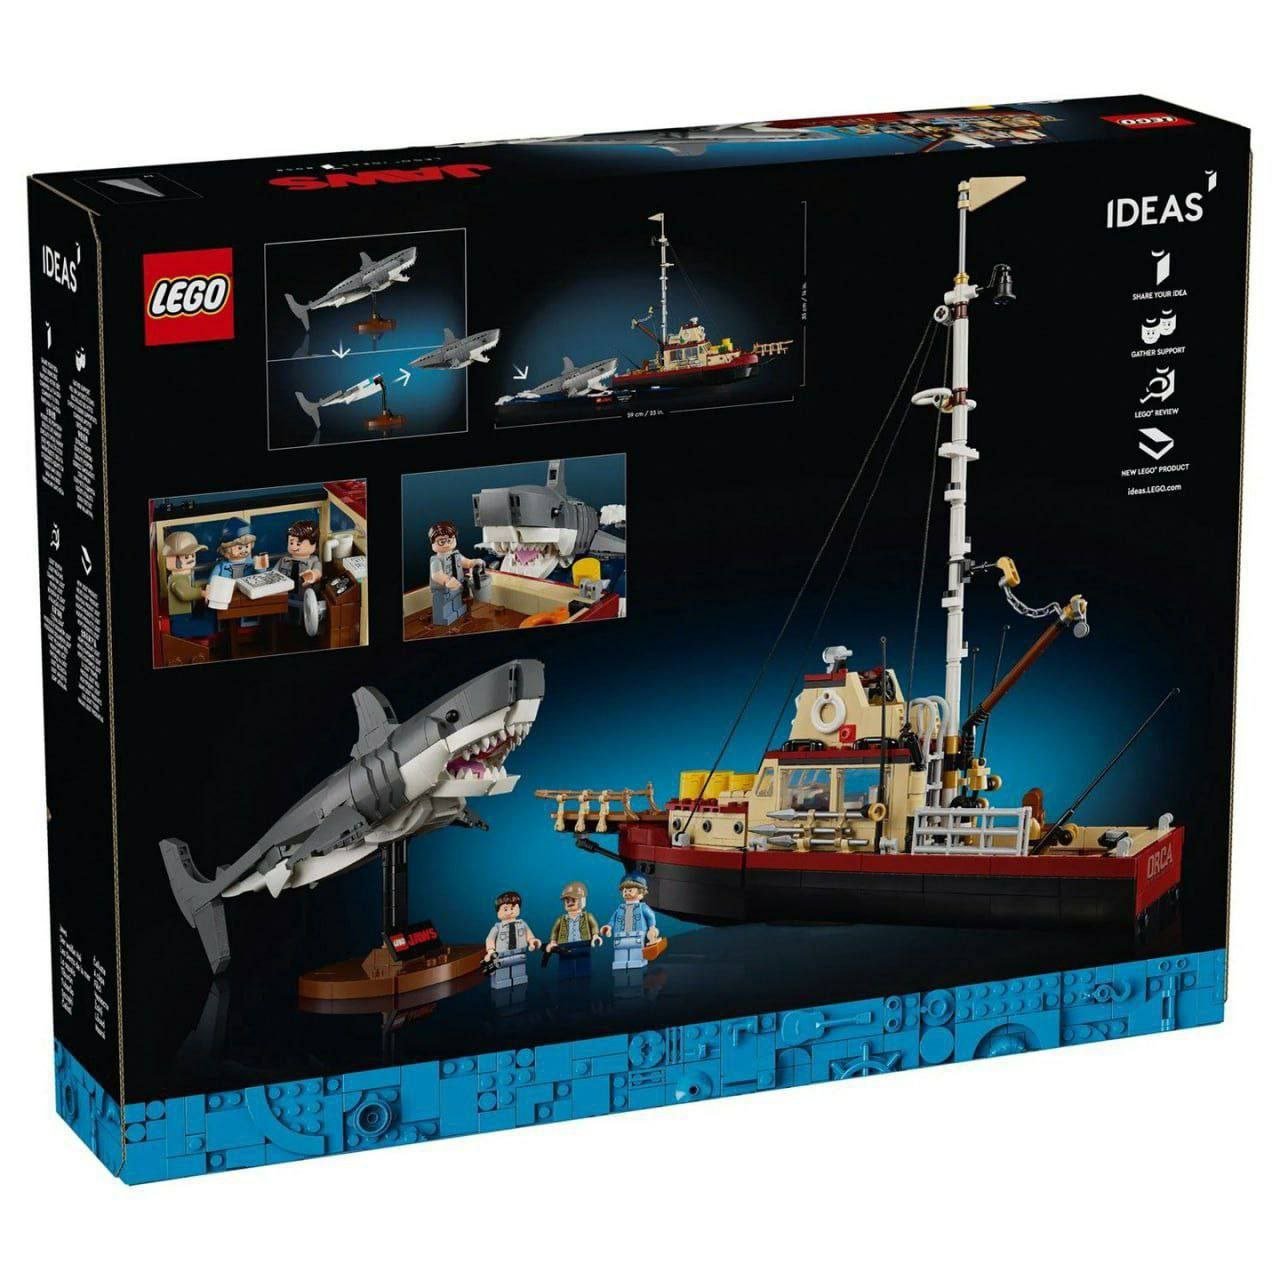 Внезапно: LEGO выпустят набор по «Челюстям».  Легендарный фильм Спилберга превратится в набор из 1500 деталей за $160. Правда, крови можно не ждать: даже в рекламном ролике акула только пощекотала девушк и не напала